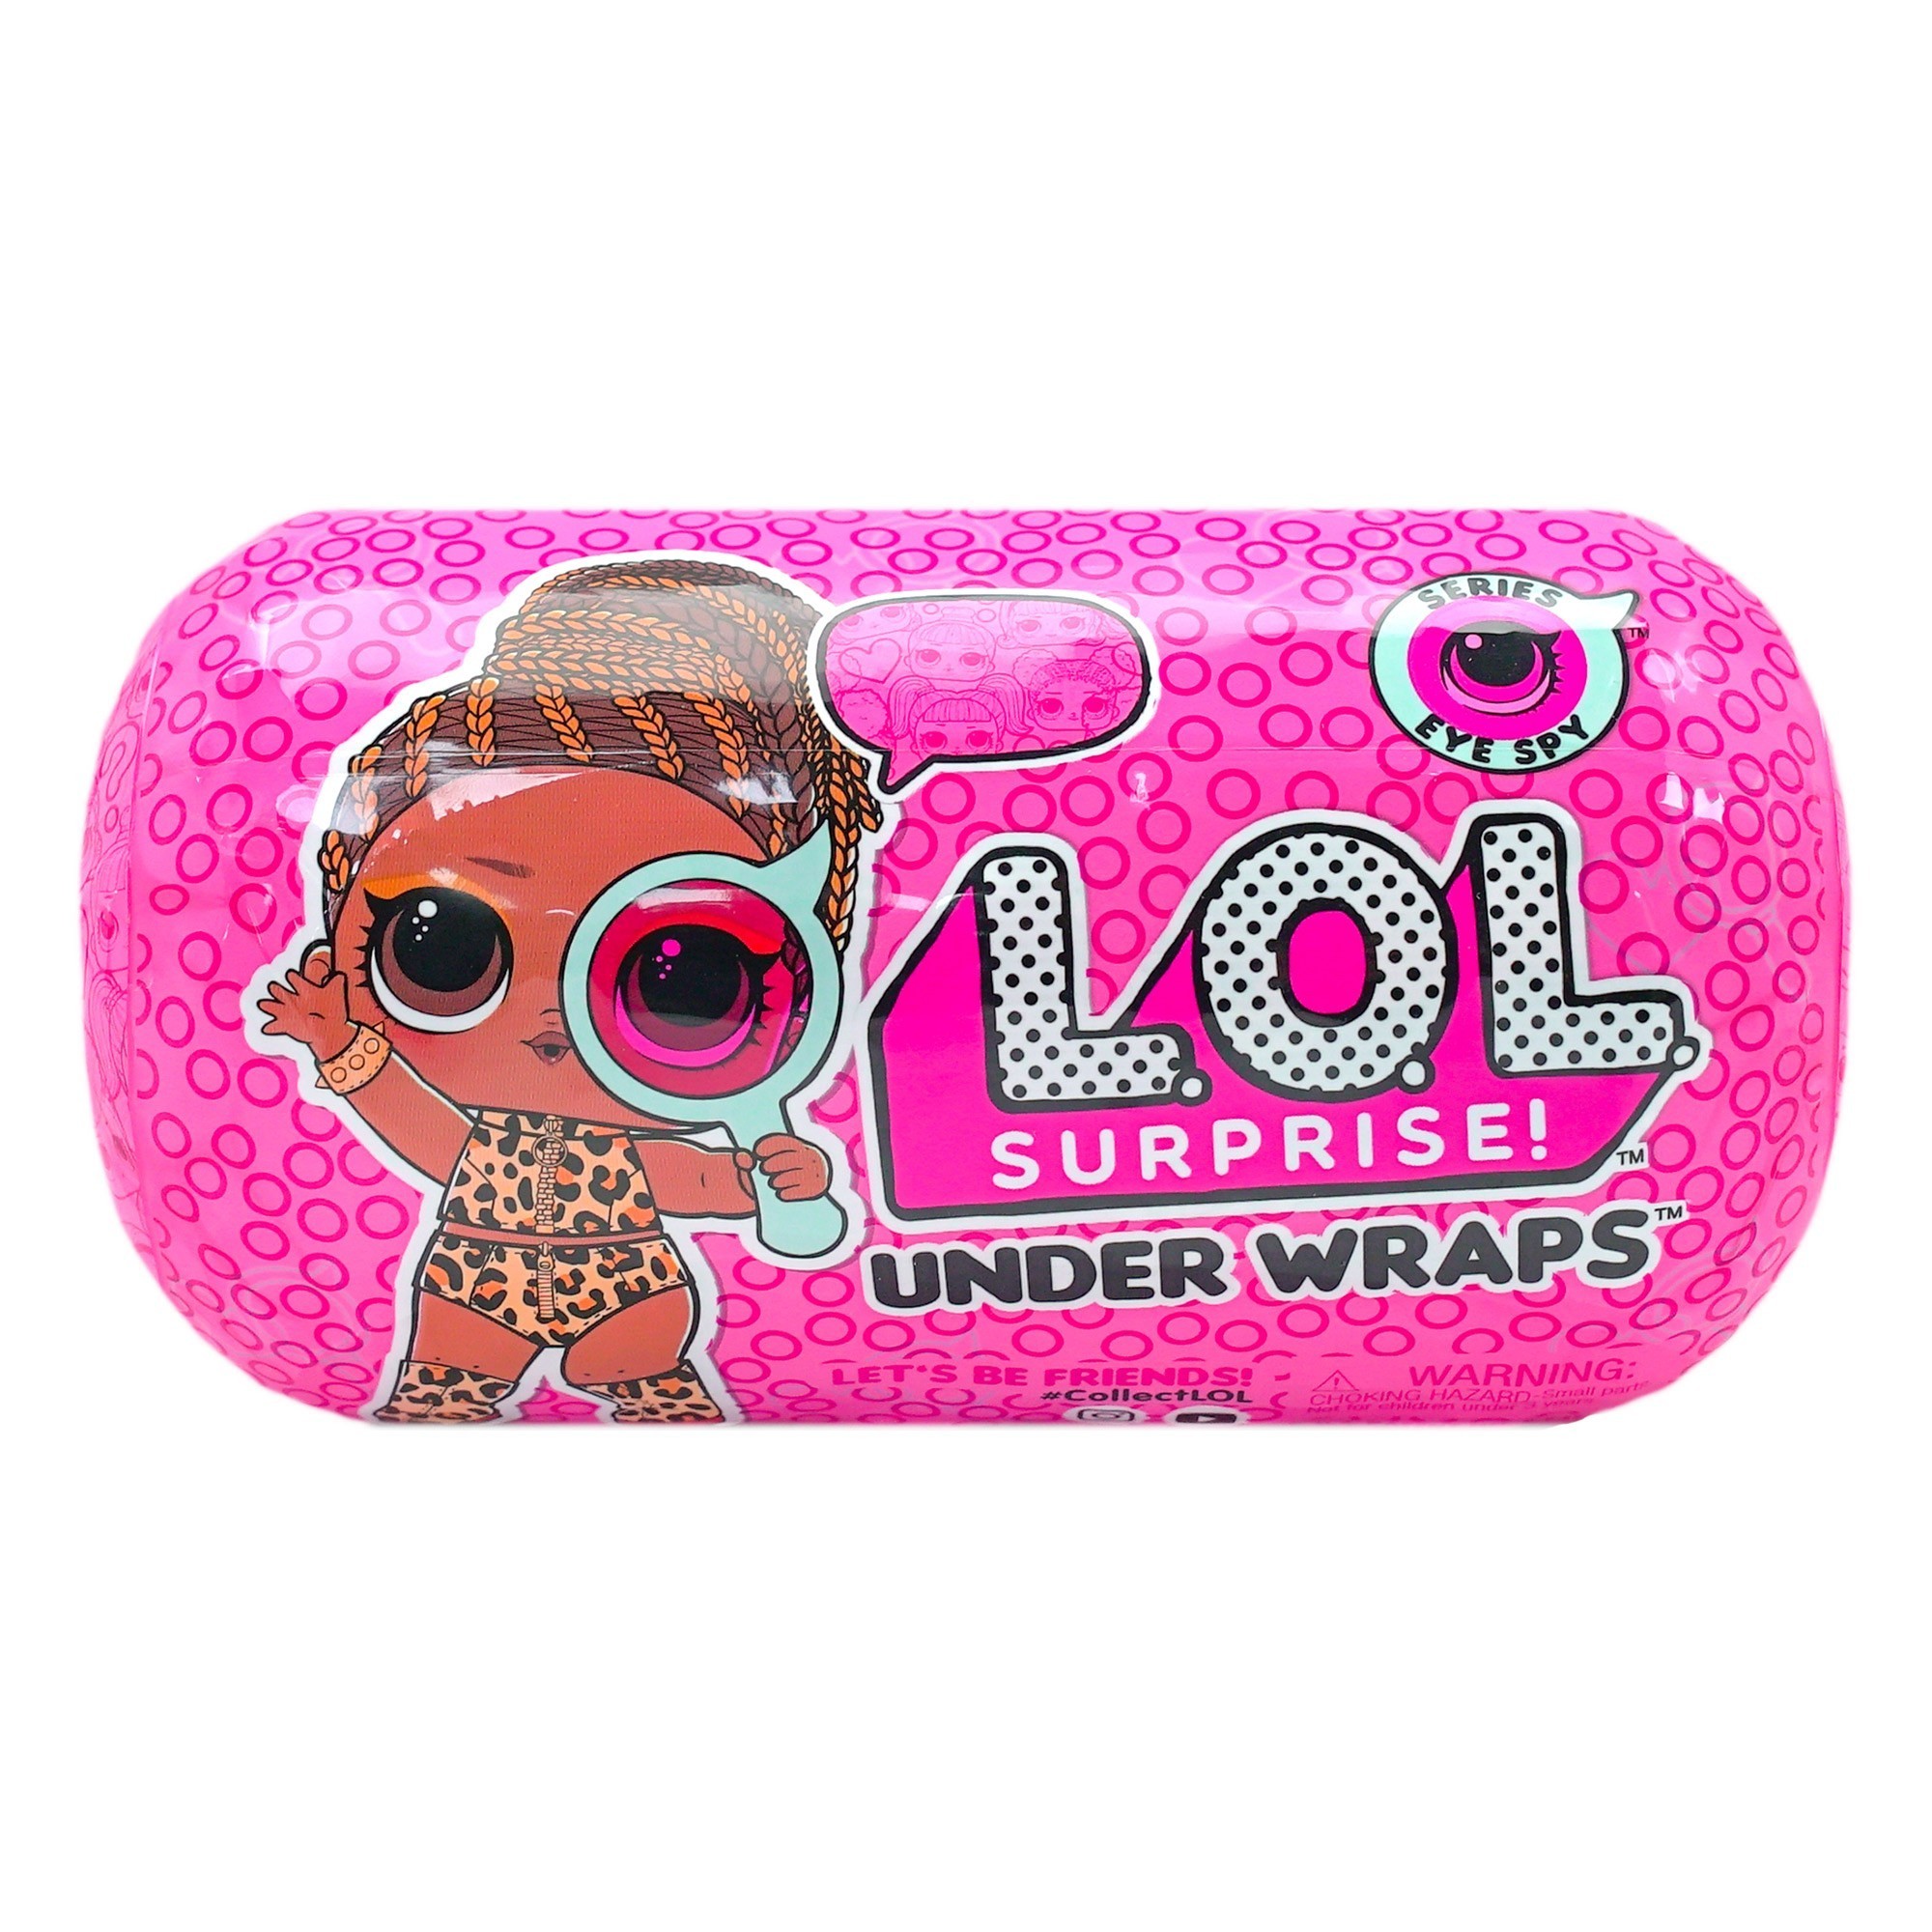 LOL Surprise - Under Wraps Doll Assortment - Series 4 Wave 2